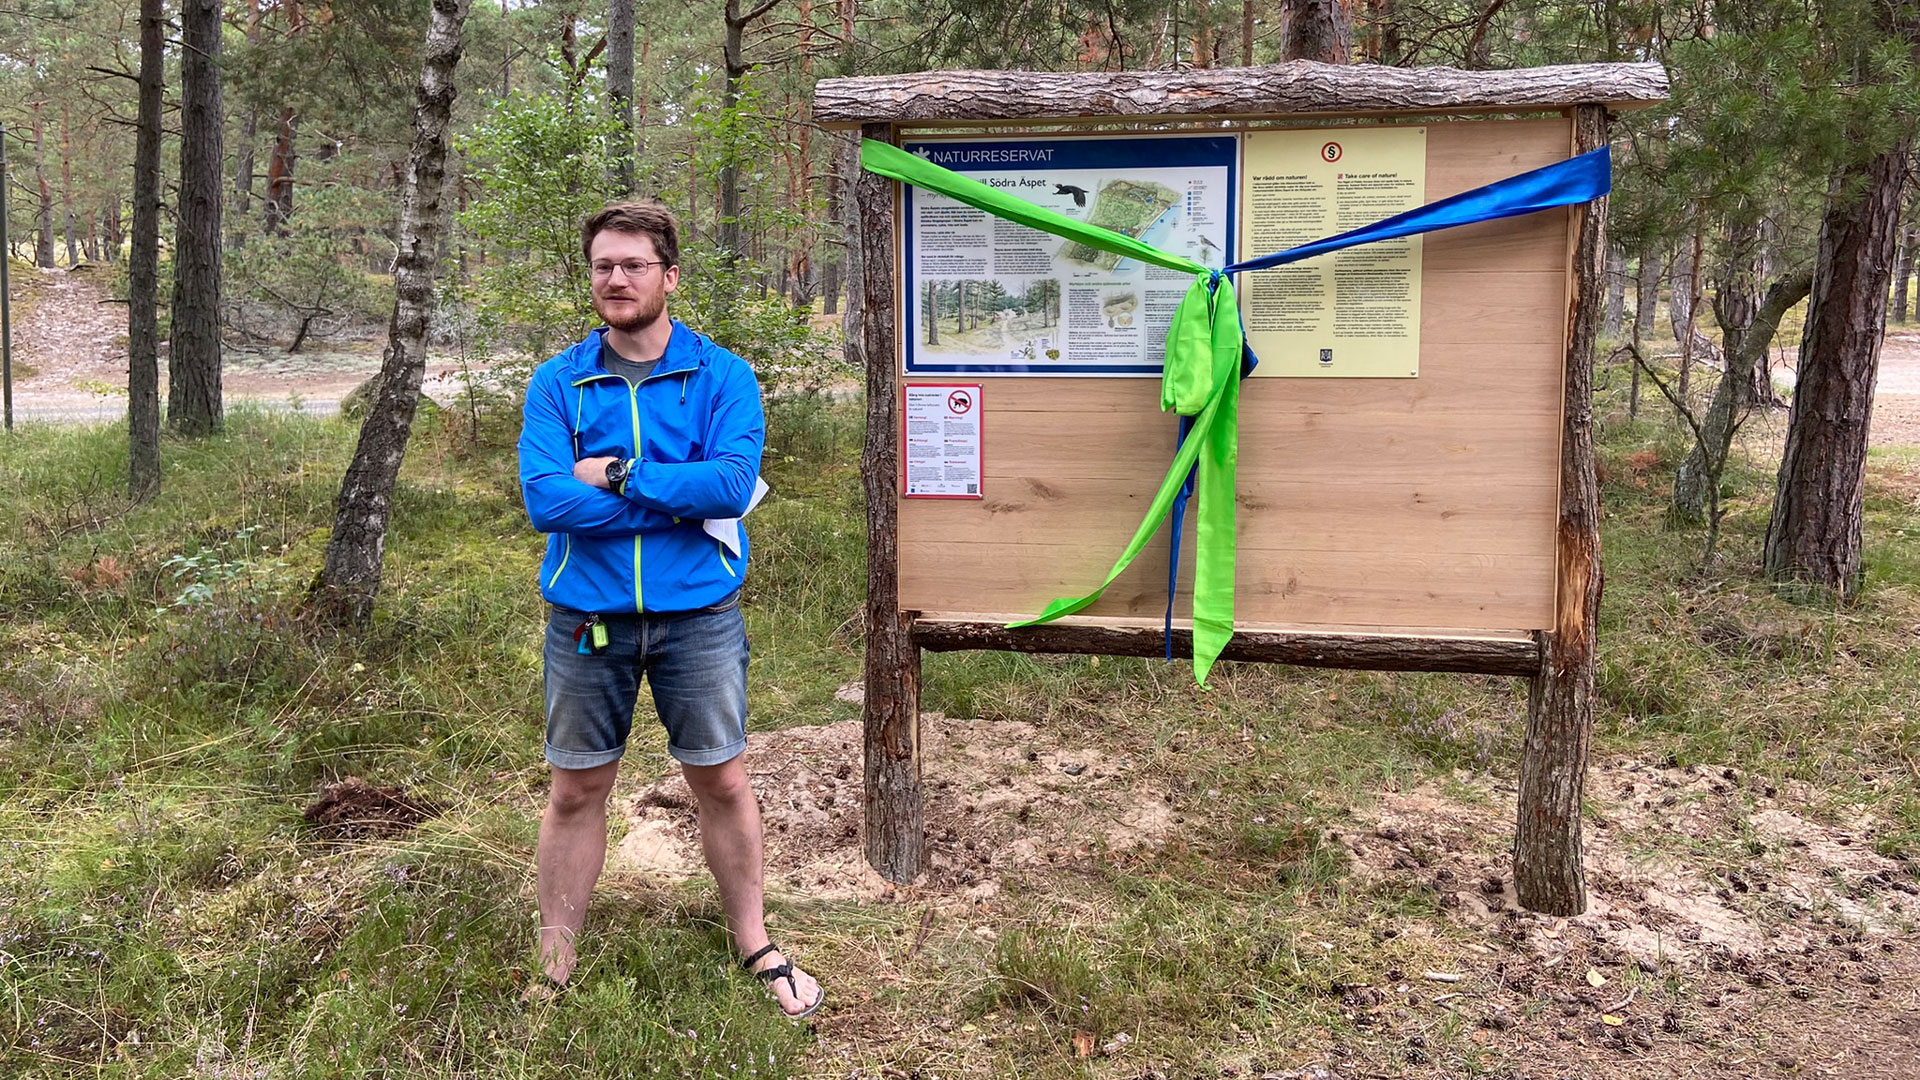 Ekolog Dan Gerell inviger naturreservat Södra Äspet